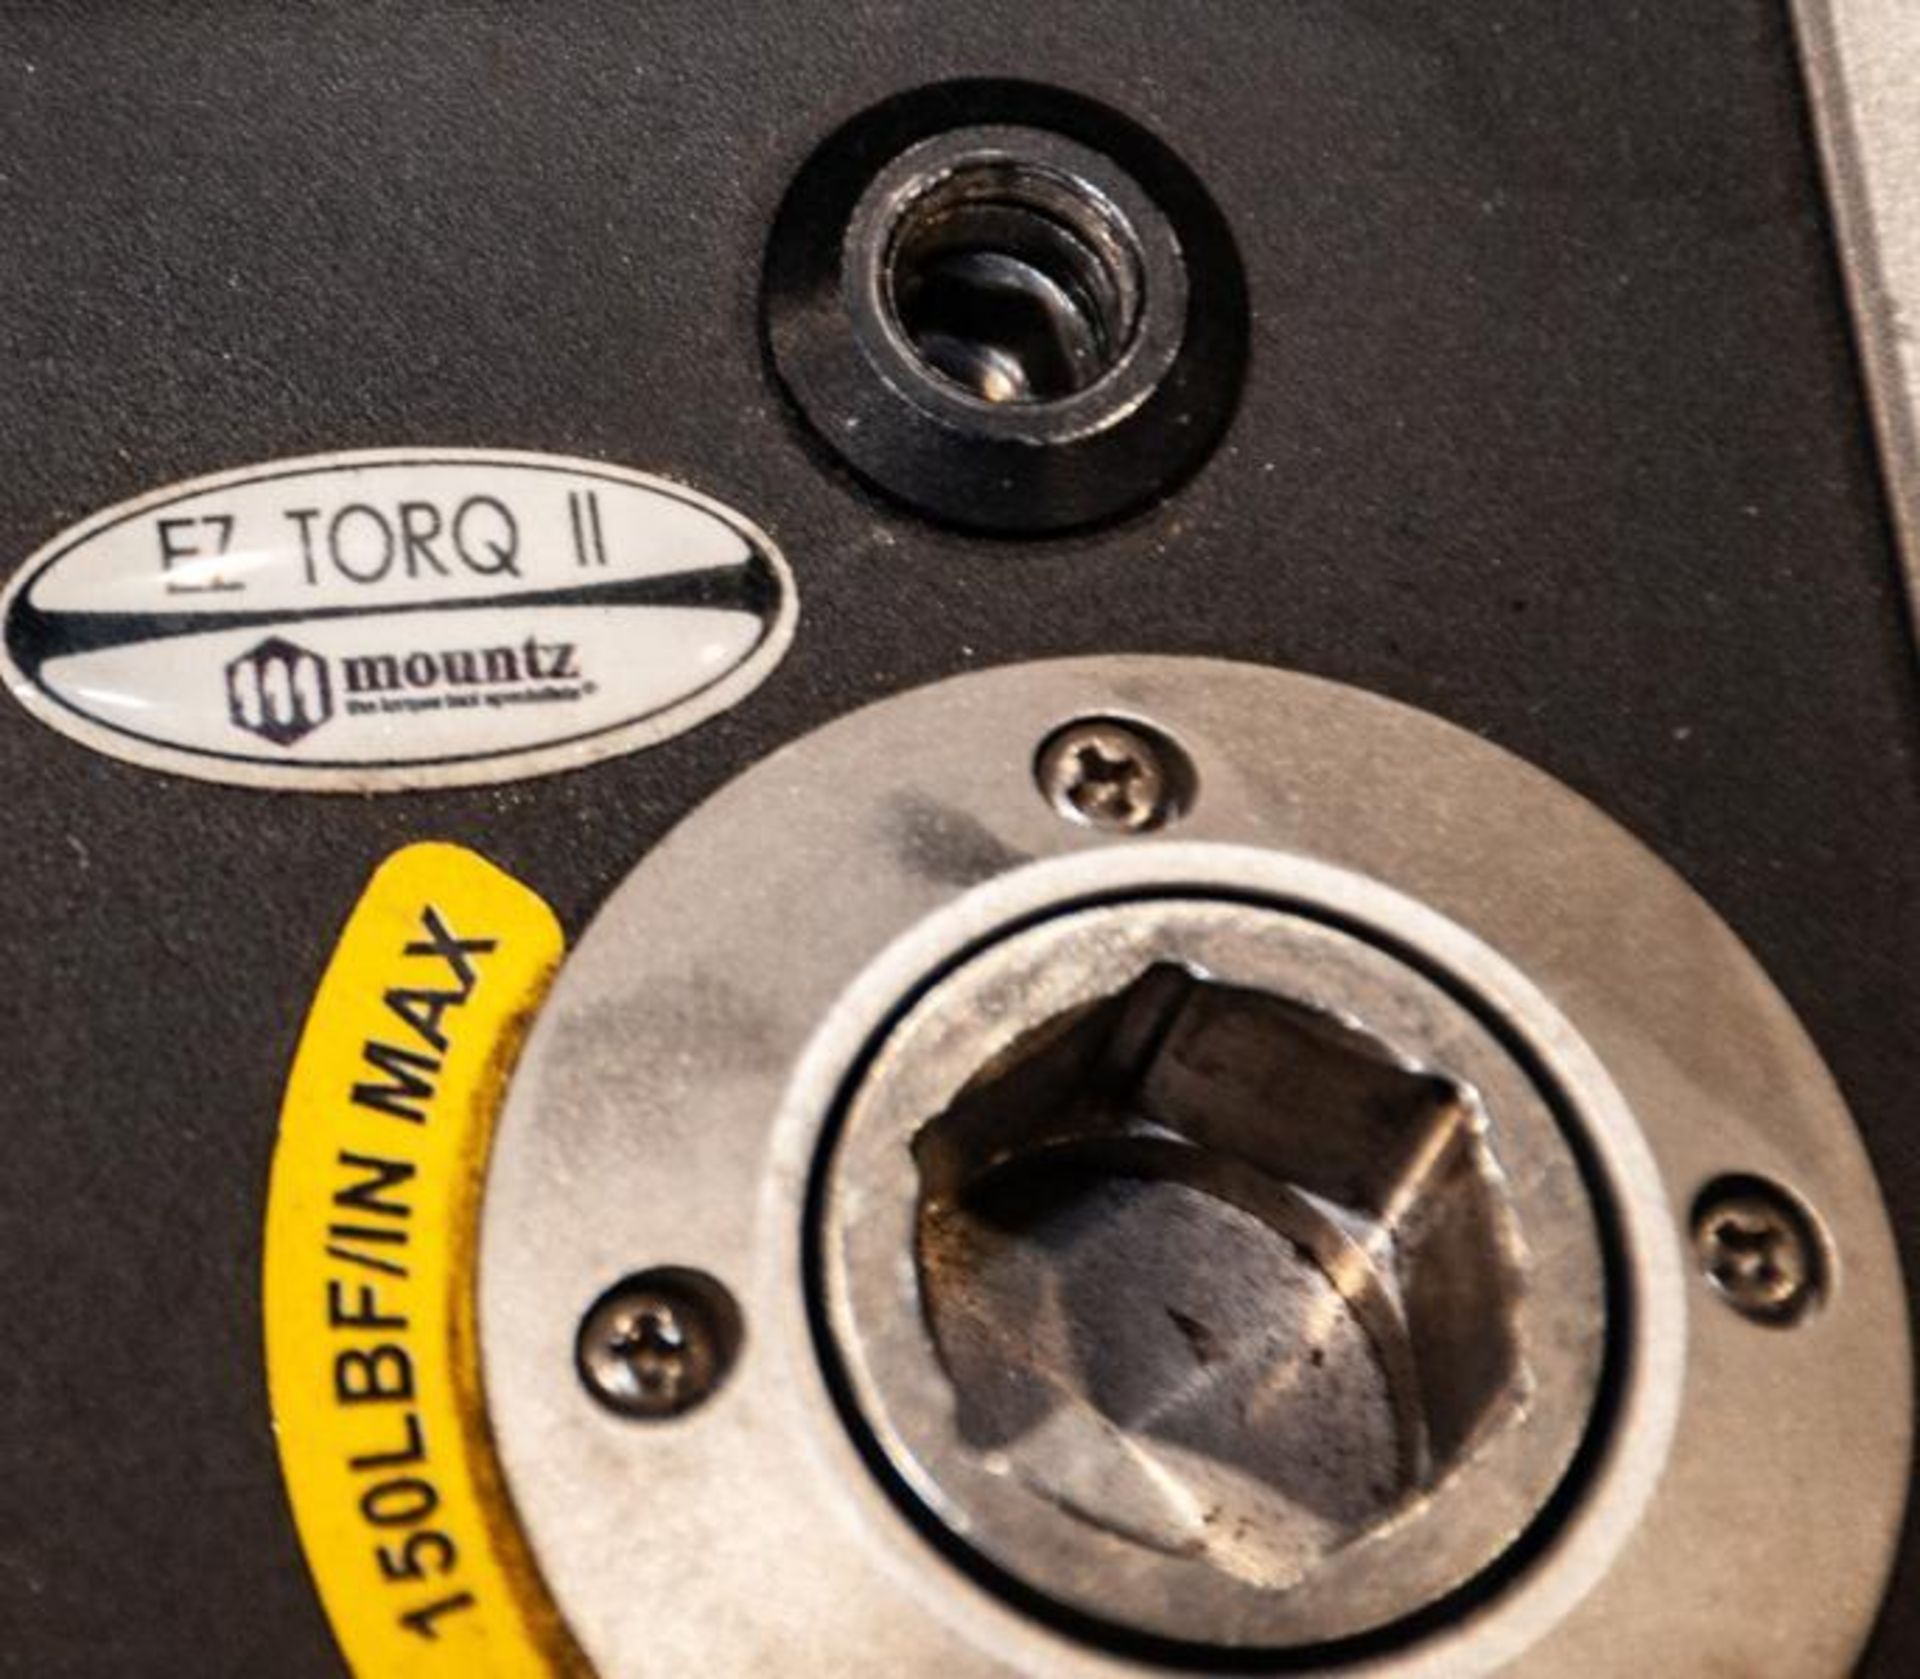 EZ TorQ II digital torque analyzer - Image 2 of 3